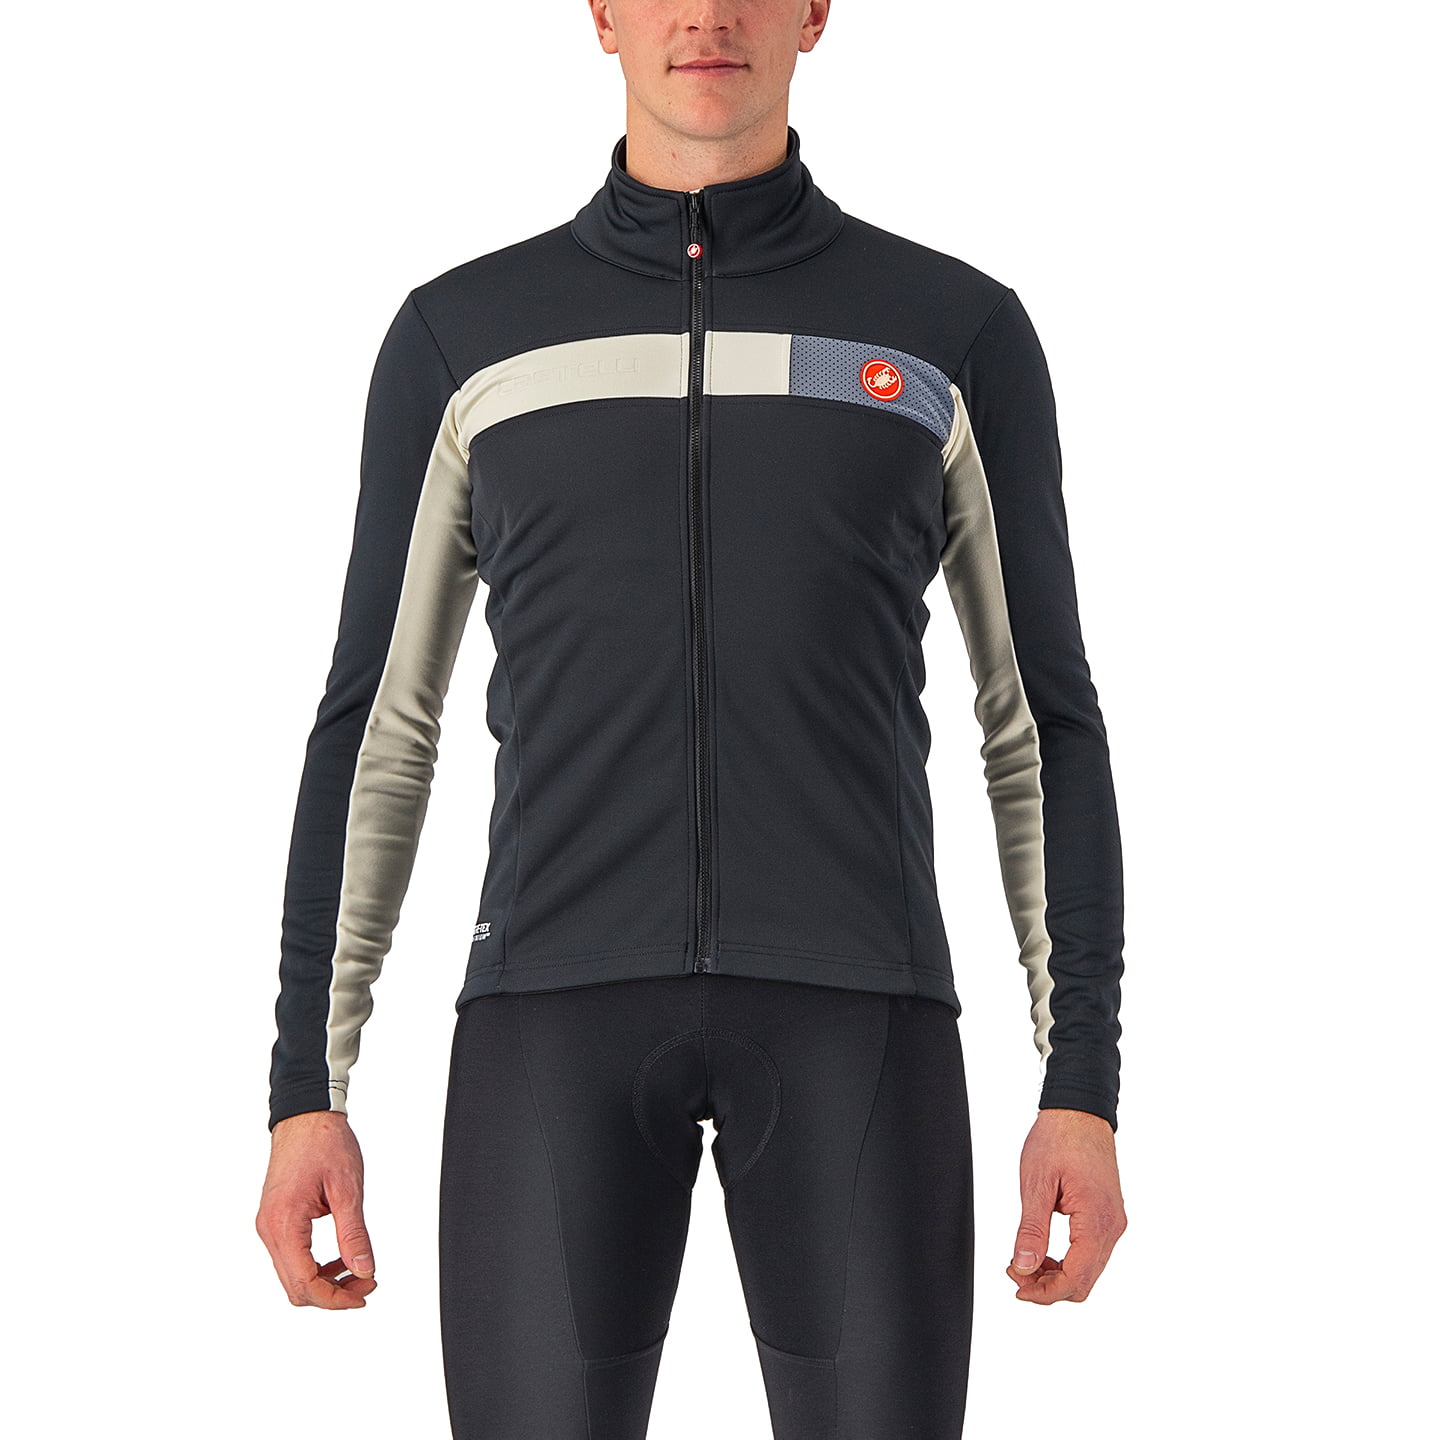 CASTELLI Mortirolo 6S Winter Jacket Thermal Jacket, for men, size S, Winter jacket, Bike gear